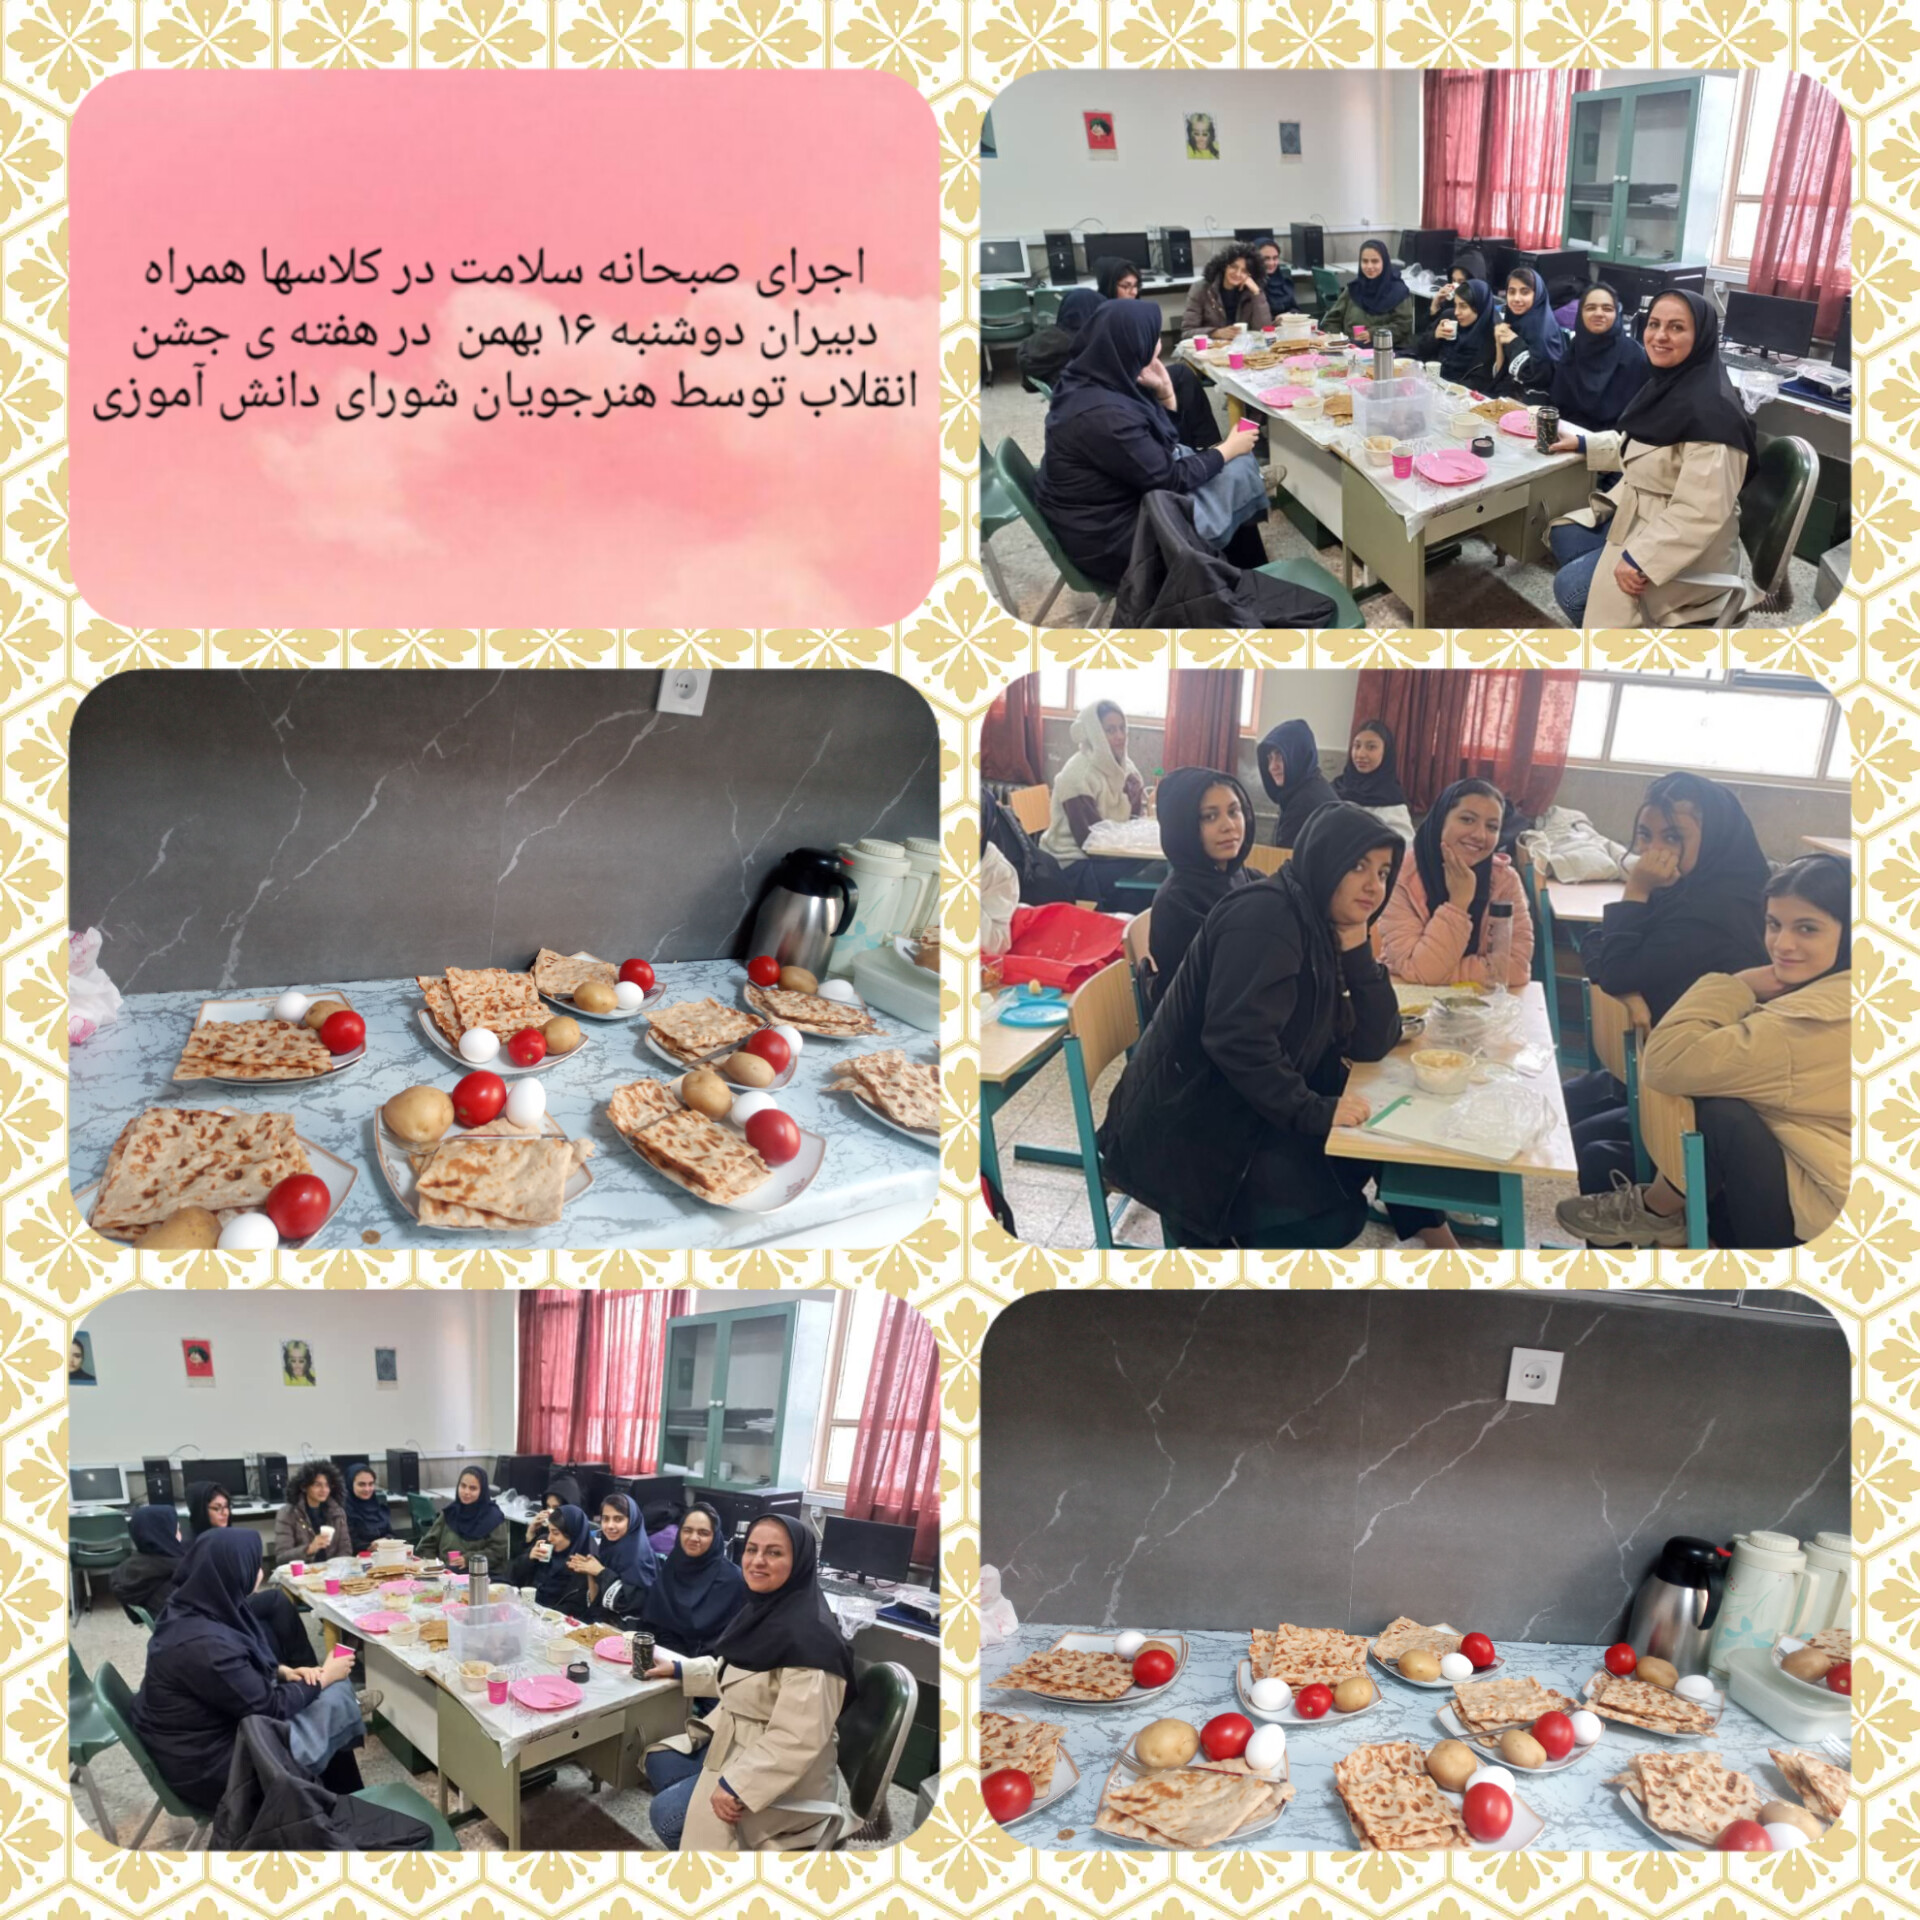 اجرای صبحانه سلامت در کلاسها همراه دبیران دوشنبه ۱۶ بهمن  در هفته ی جشن انقلاب توسط هنرجویان شورای دانش آموزی